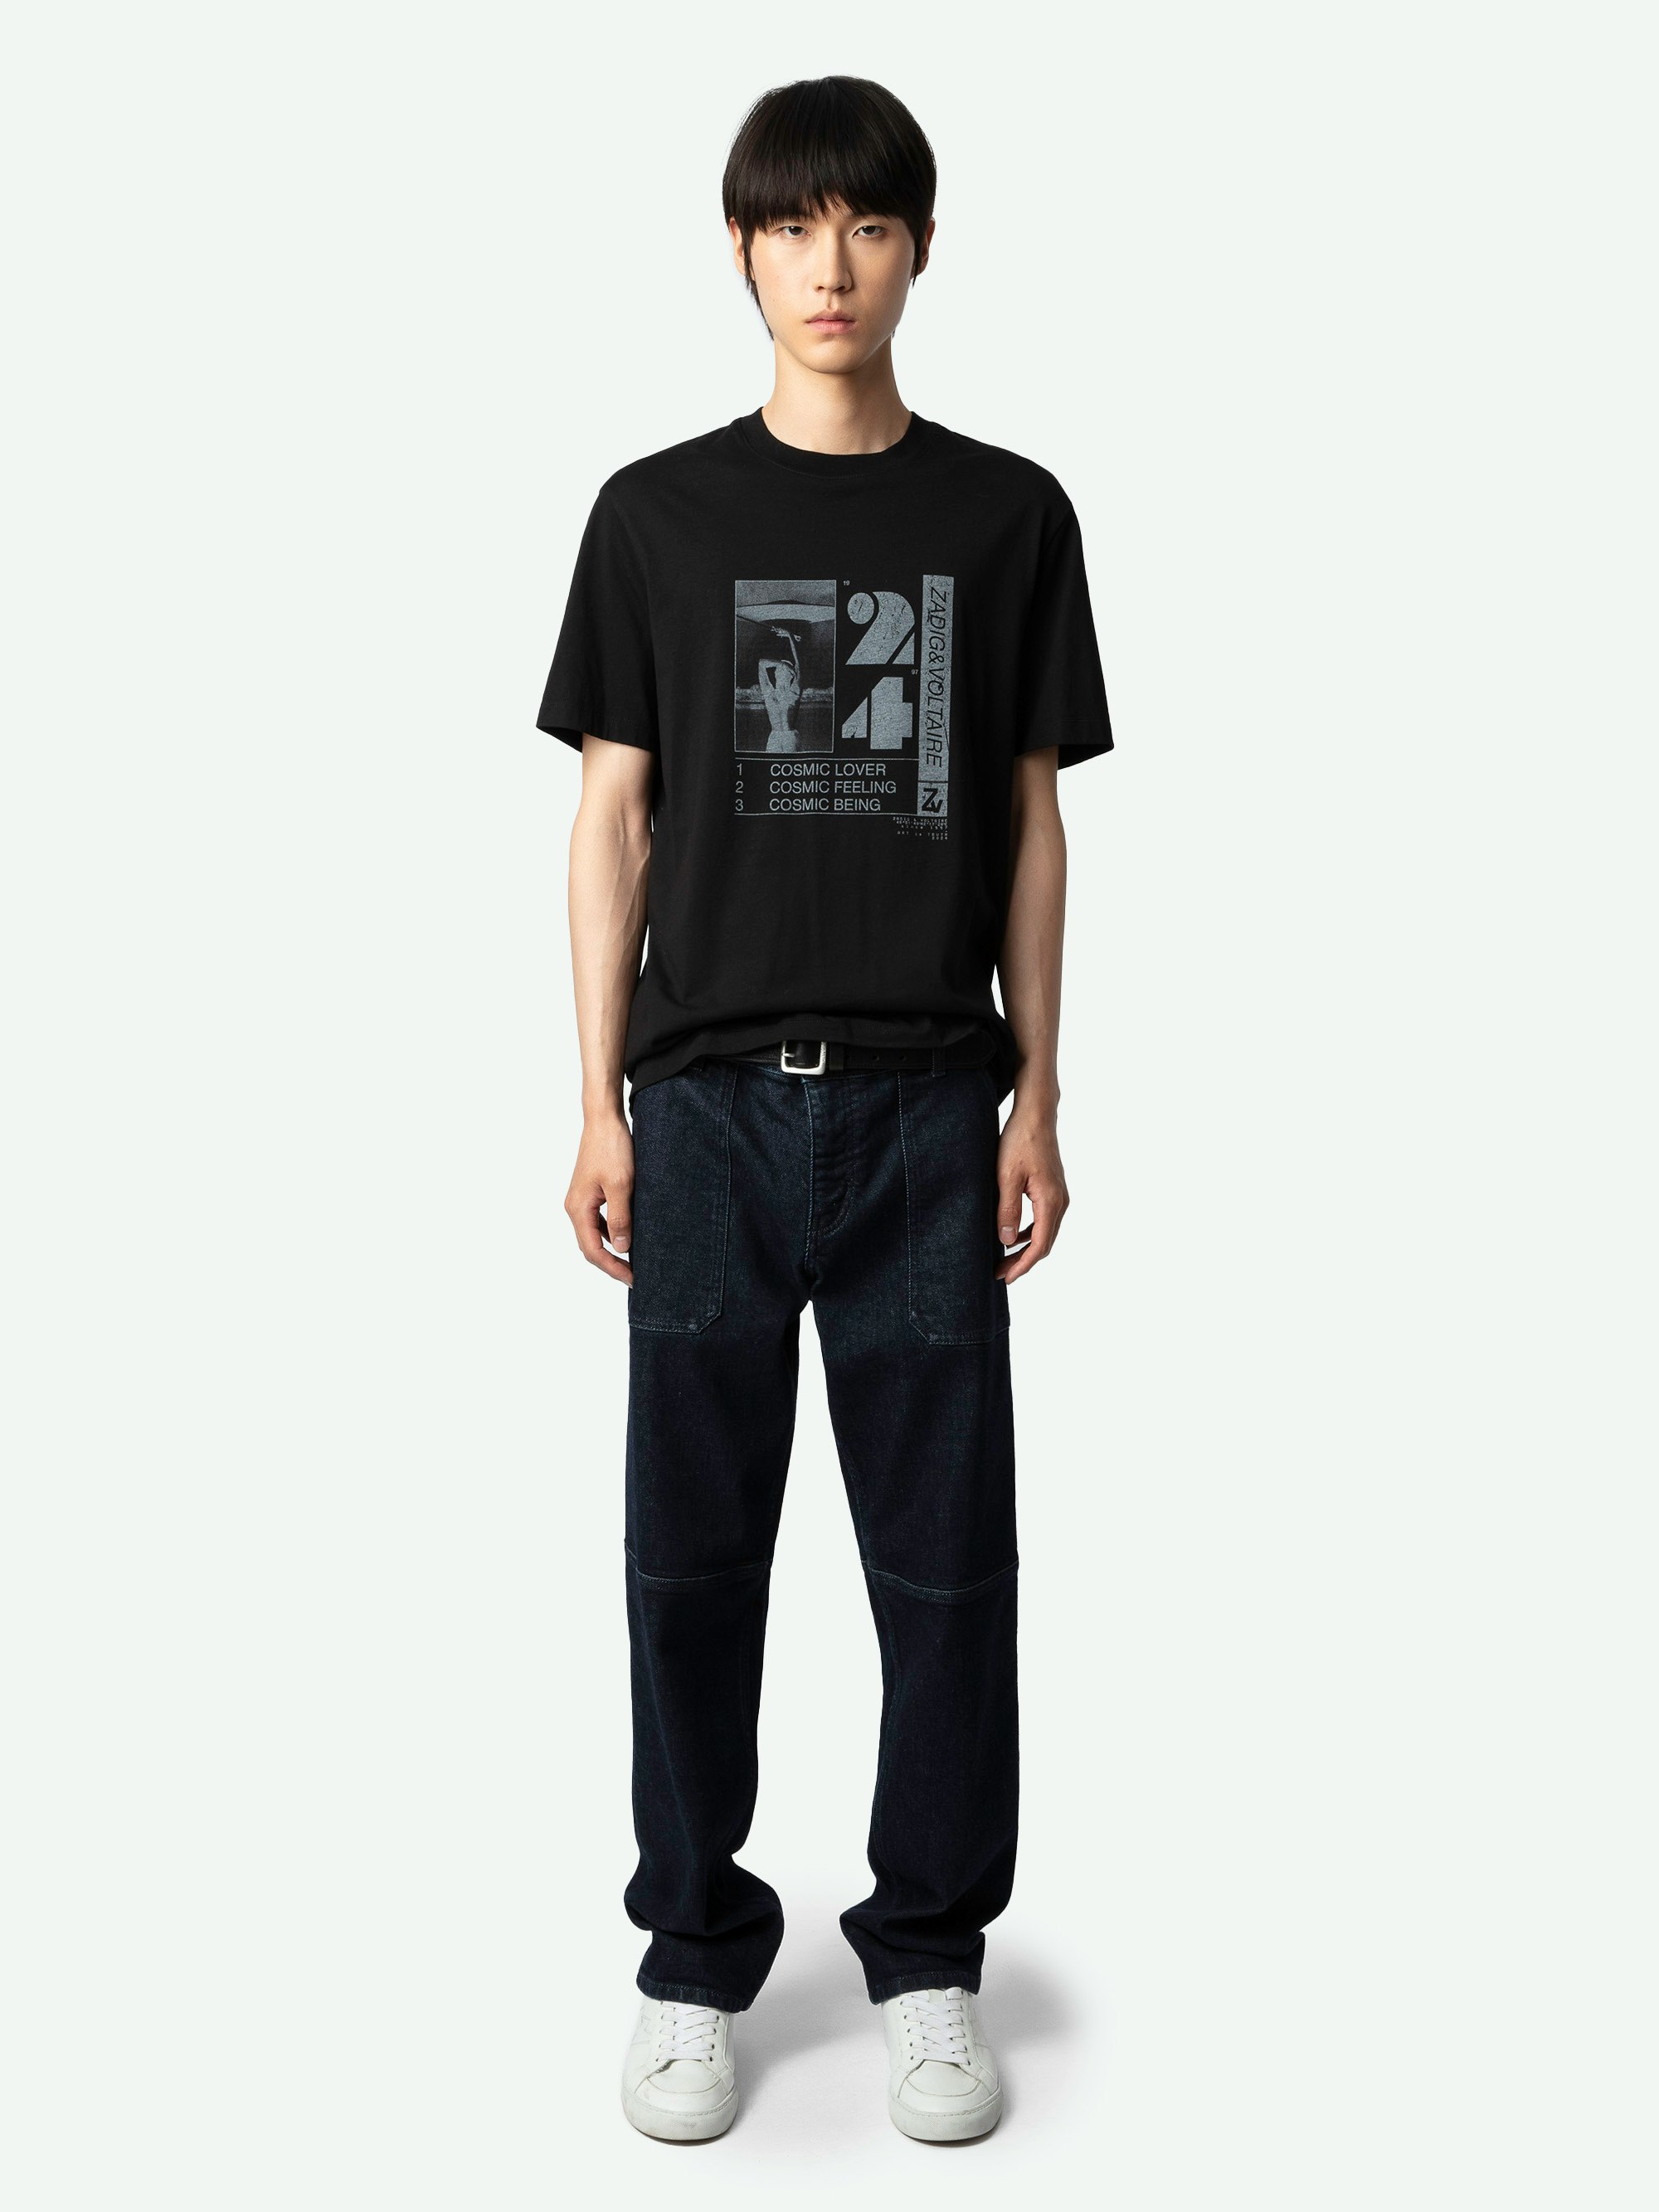 T-shirt Ted Photoprint - T-shirt nera in cotone biologico con maniche corte e stampa fotografica Cosmic sul davanti.